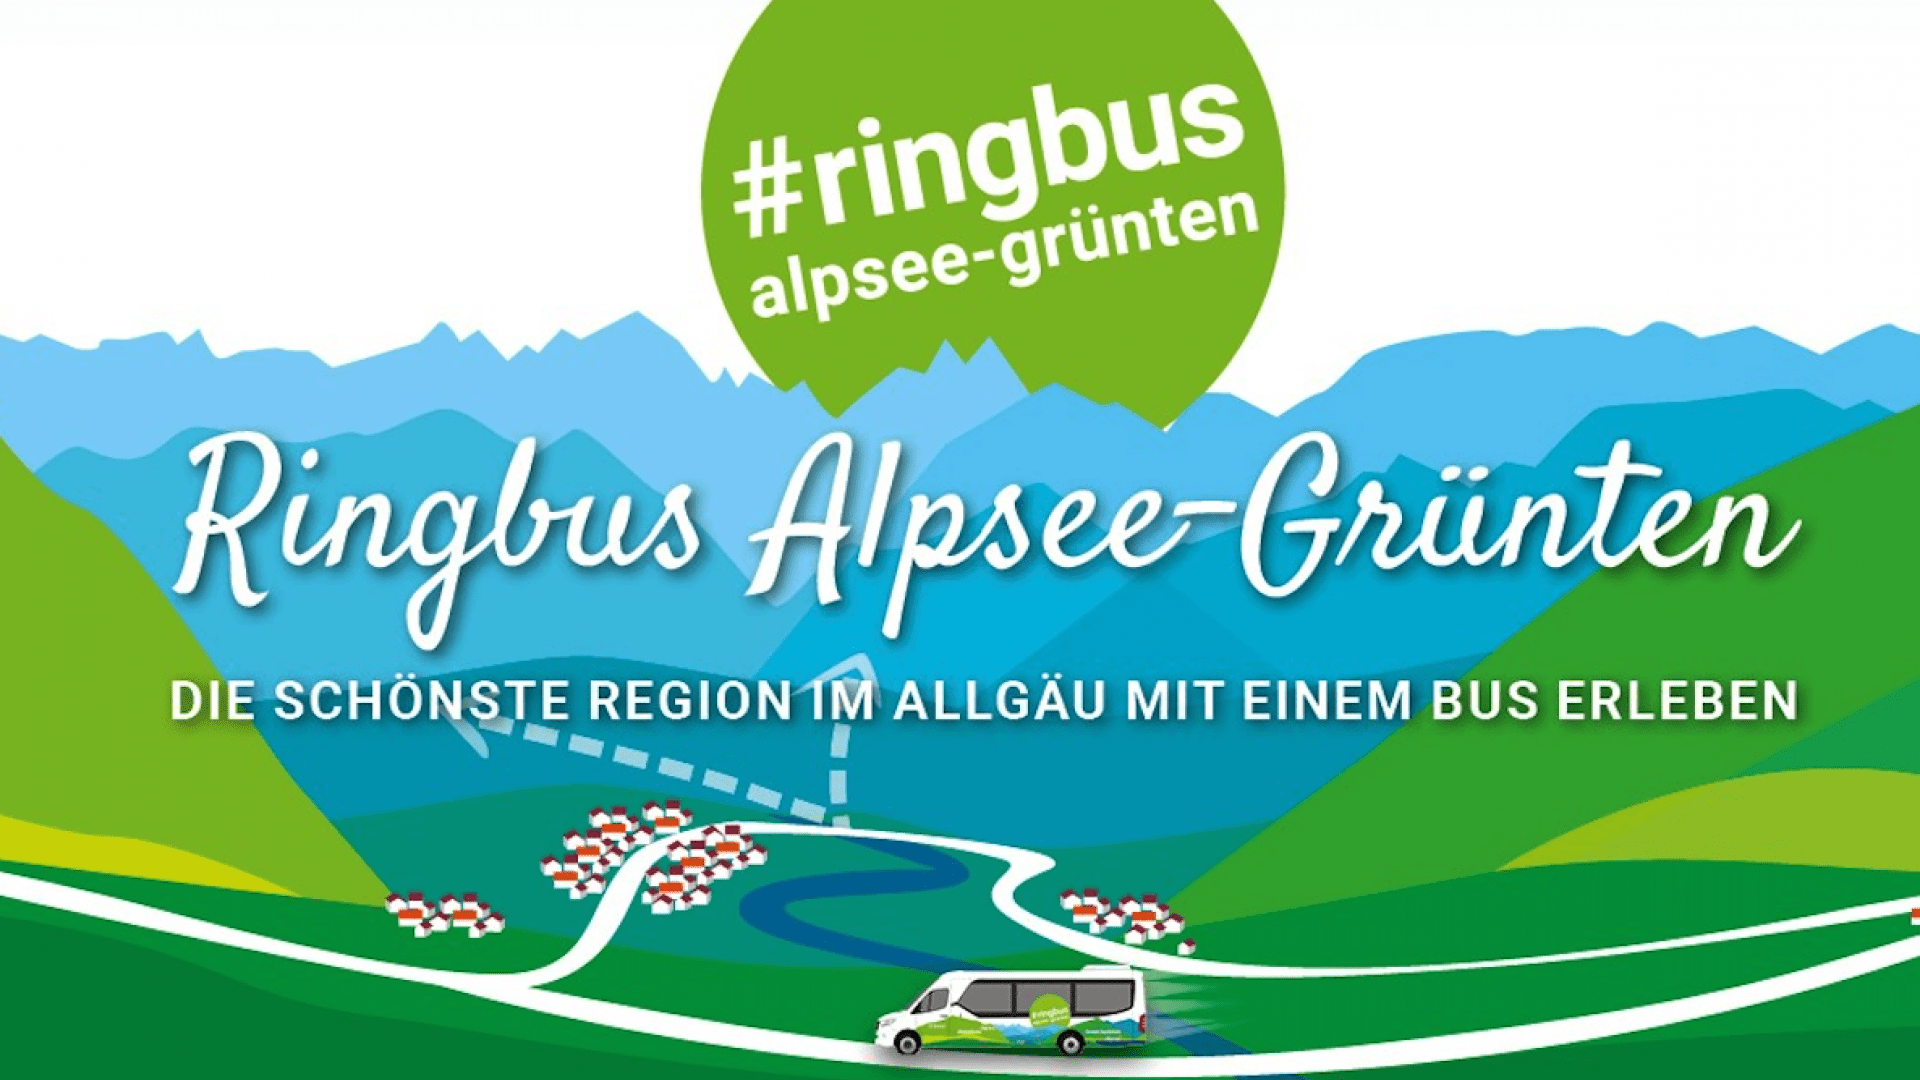 Ringbus Allgäu